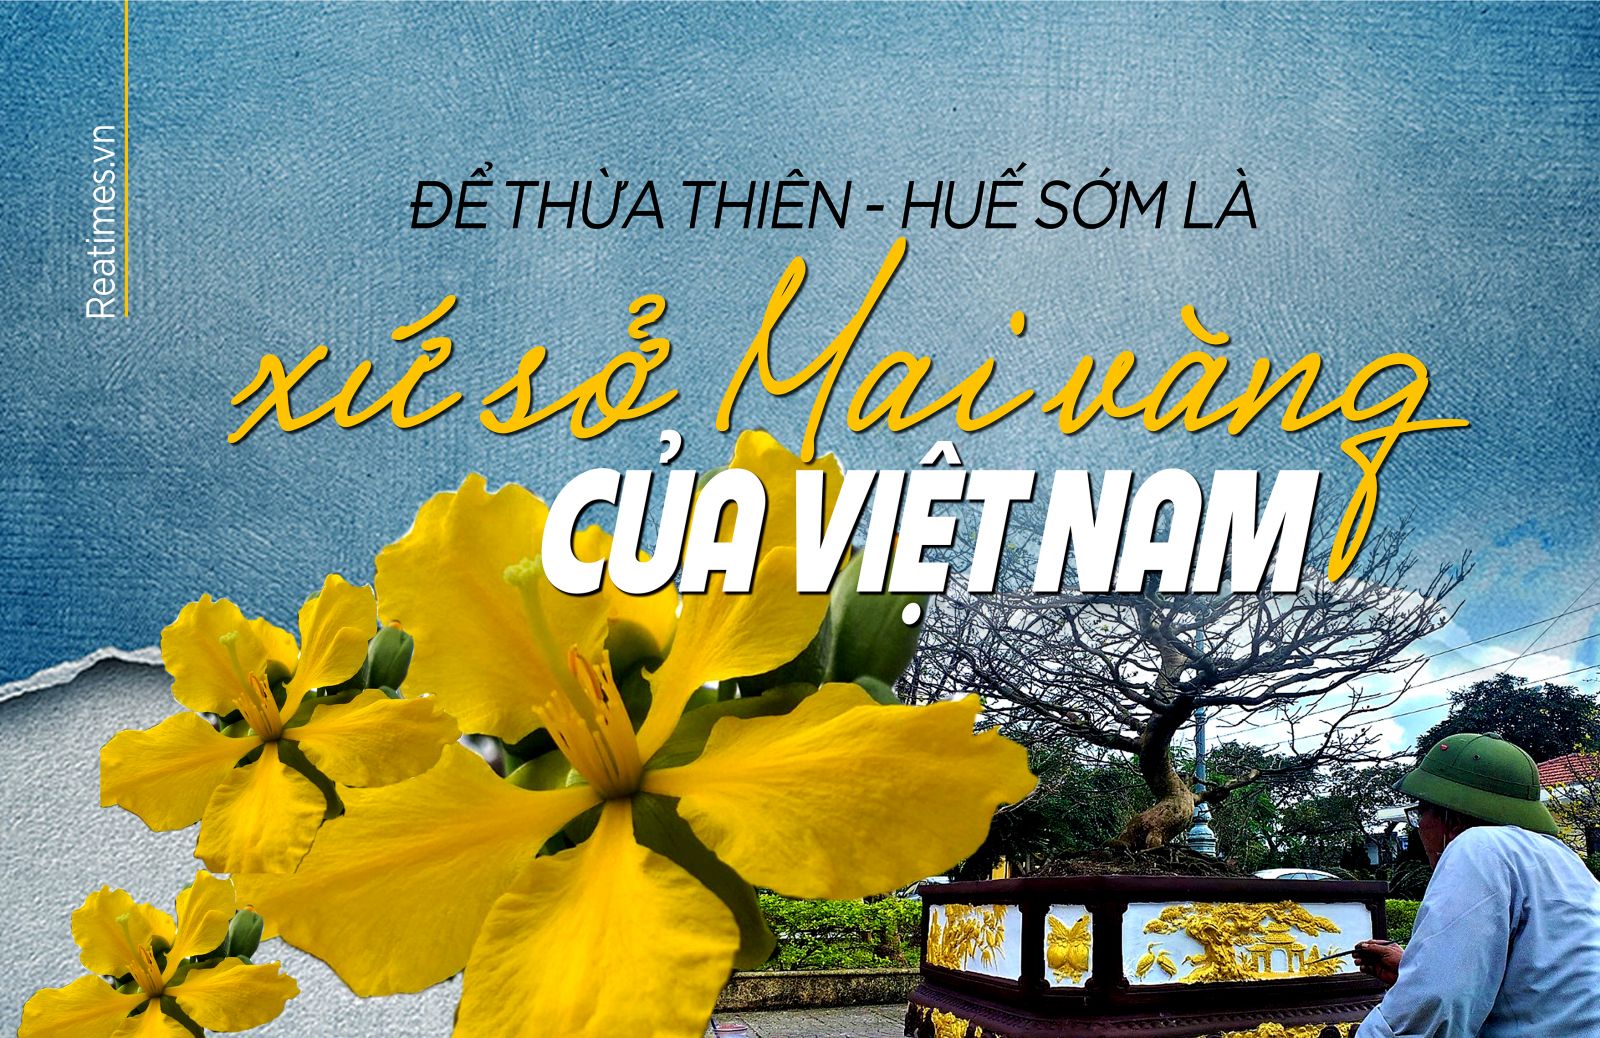 Để Thừa Thiên - Huế sớm là xứ sở Mai vàng của Việt Nam